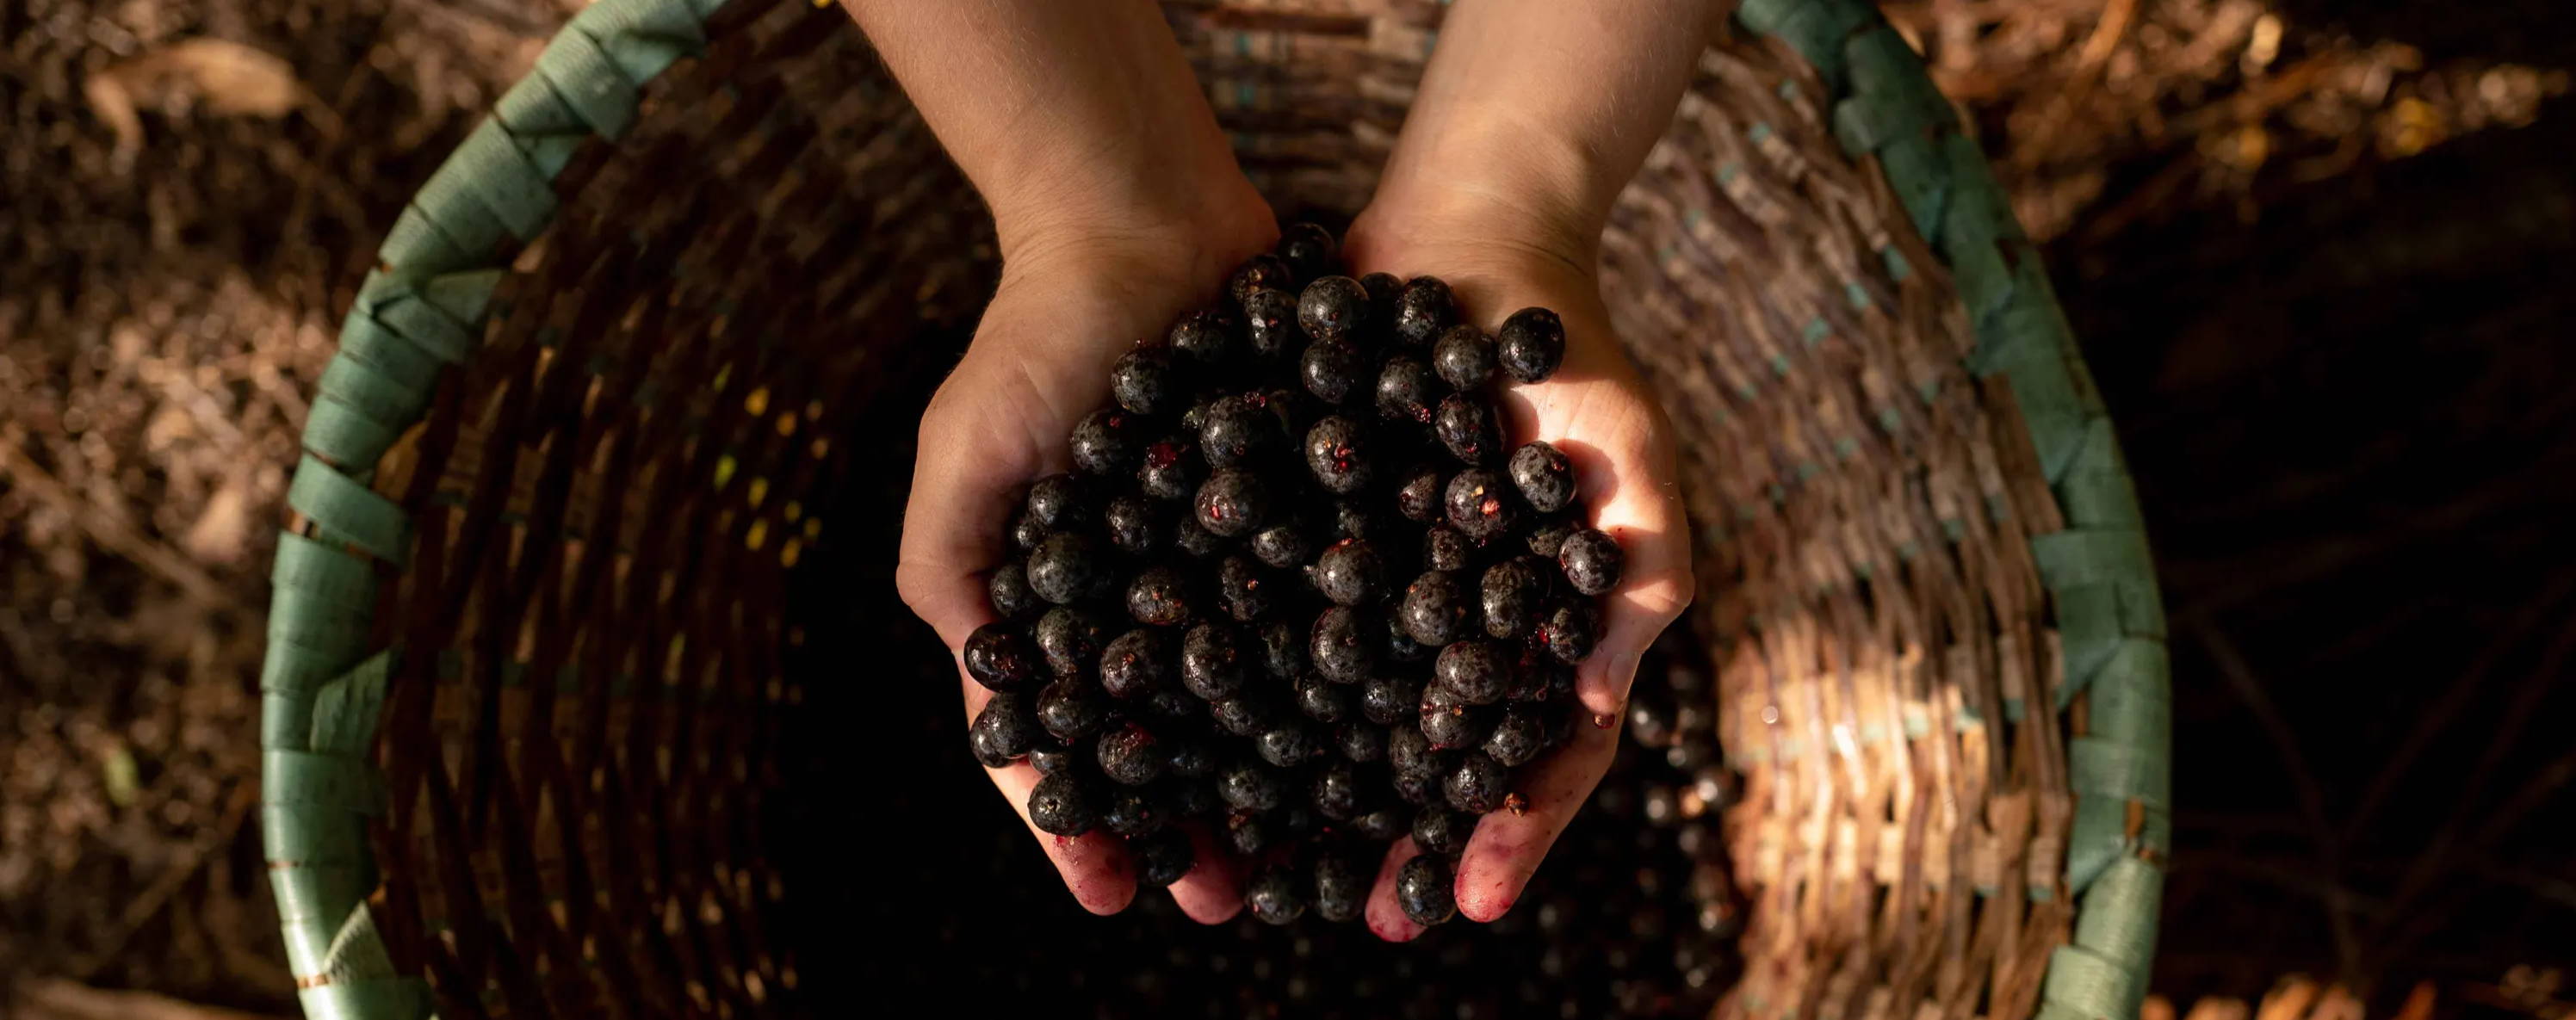 fresh açaí berries @ 2020 botanica origins